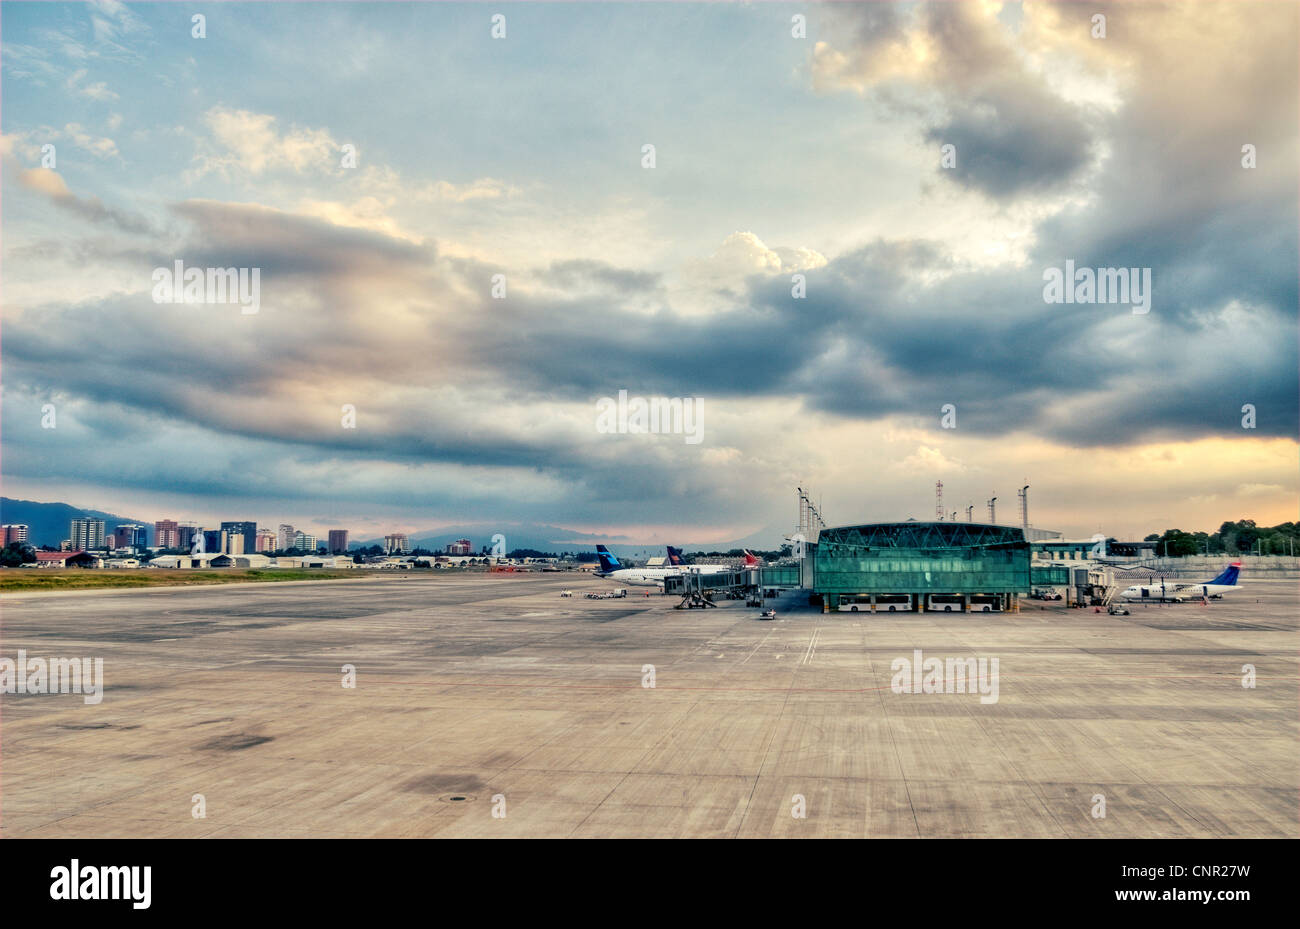 Terminal Nord de la ville de Guatemala est l'aéroport international La Aurora (GUA) ; à gauche est la ville la Zona 14 skyline. Banque D'Images